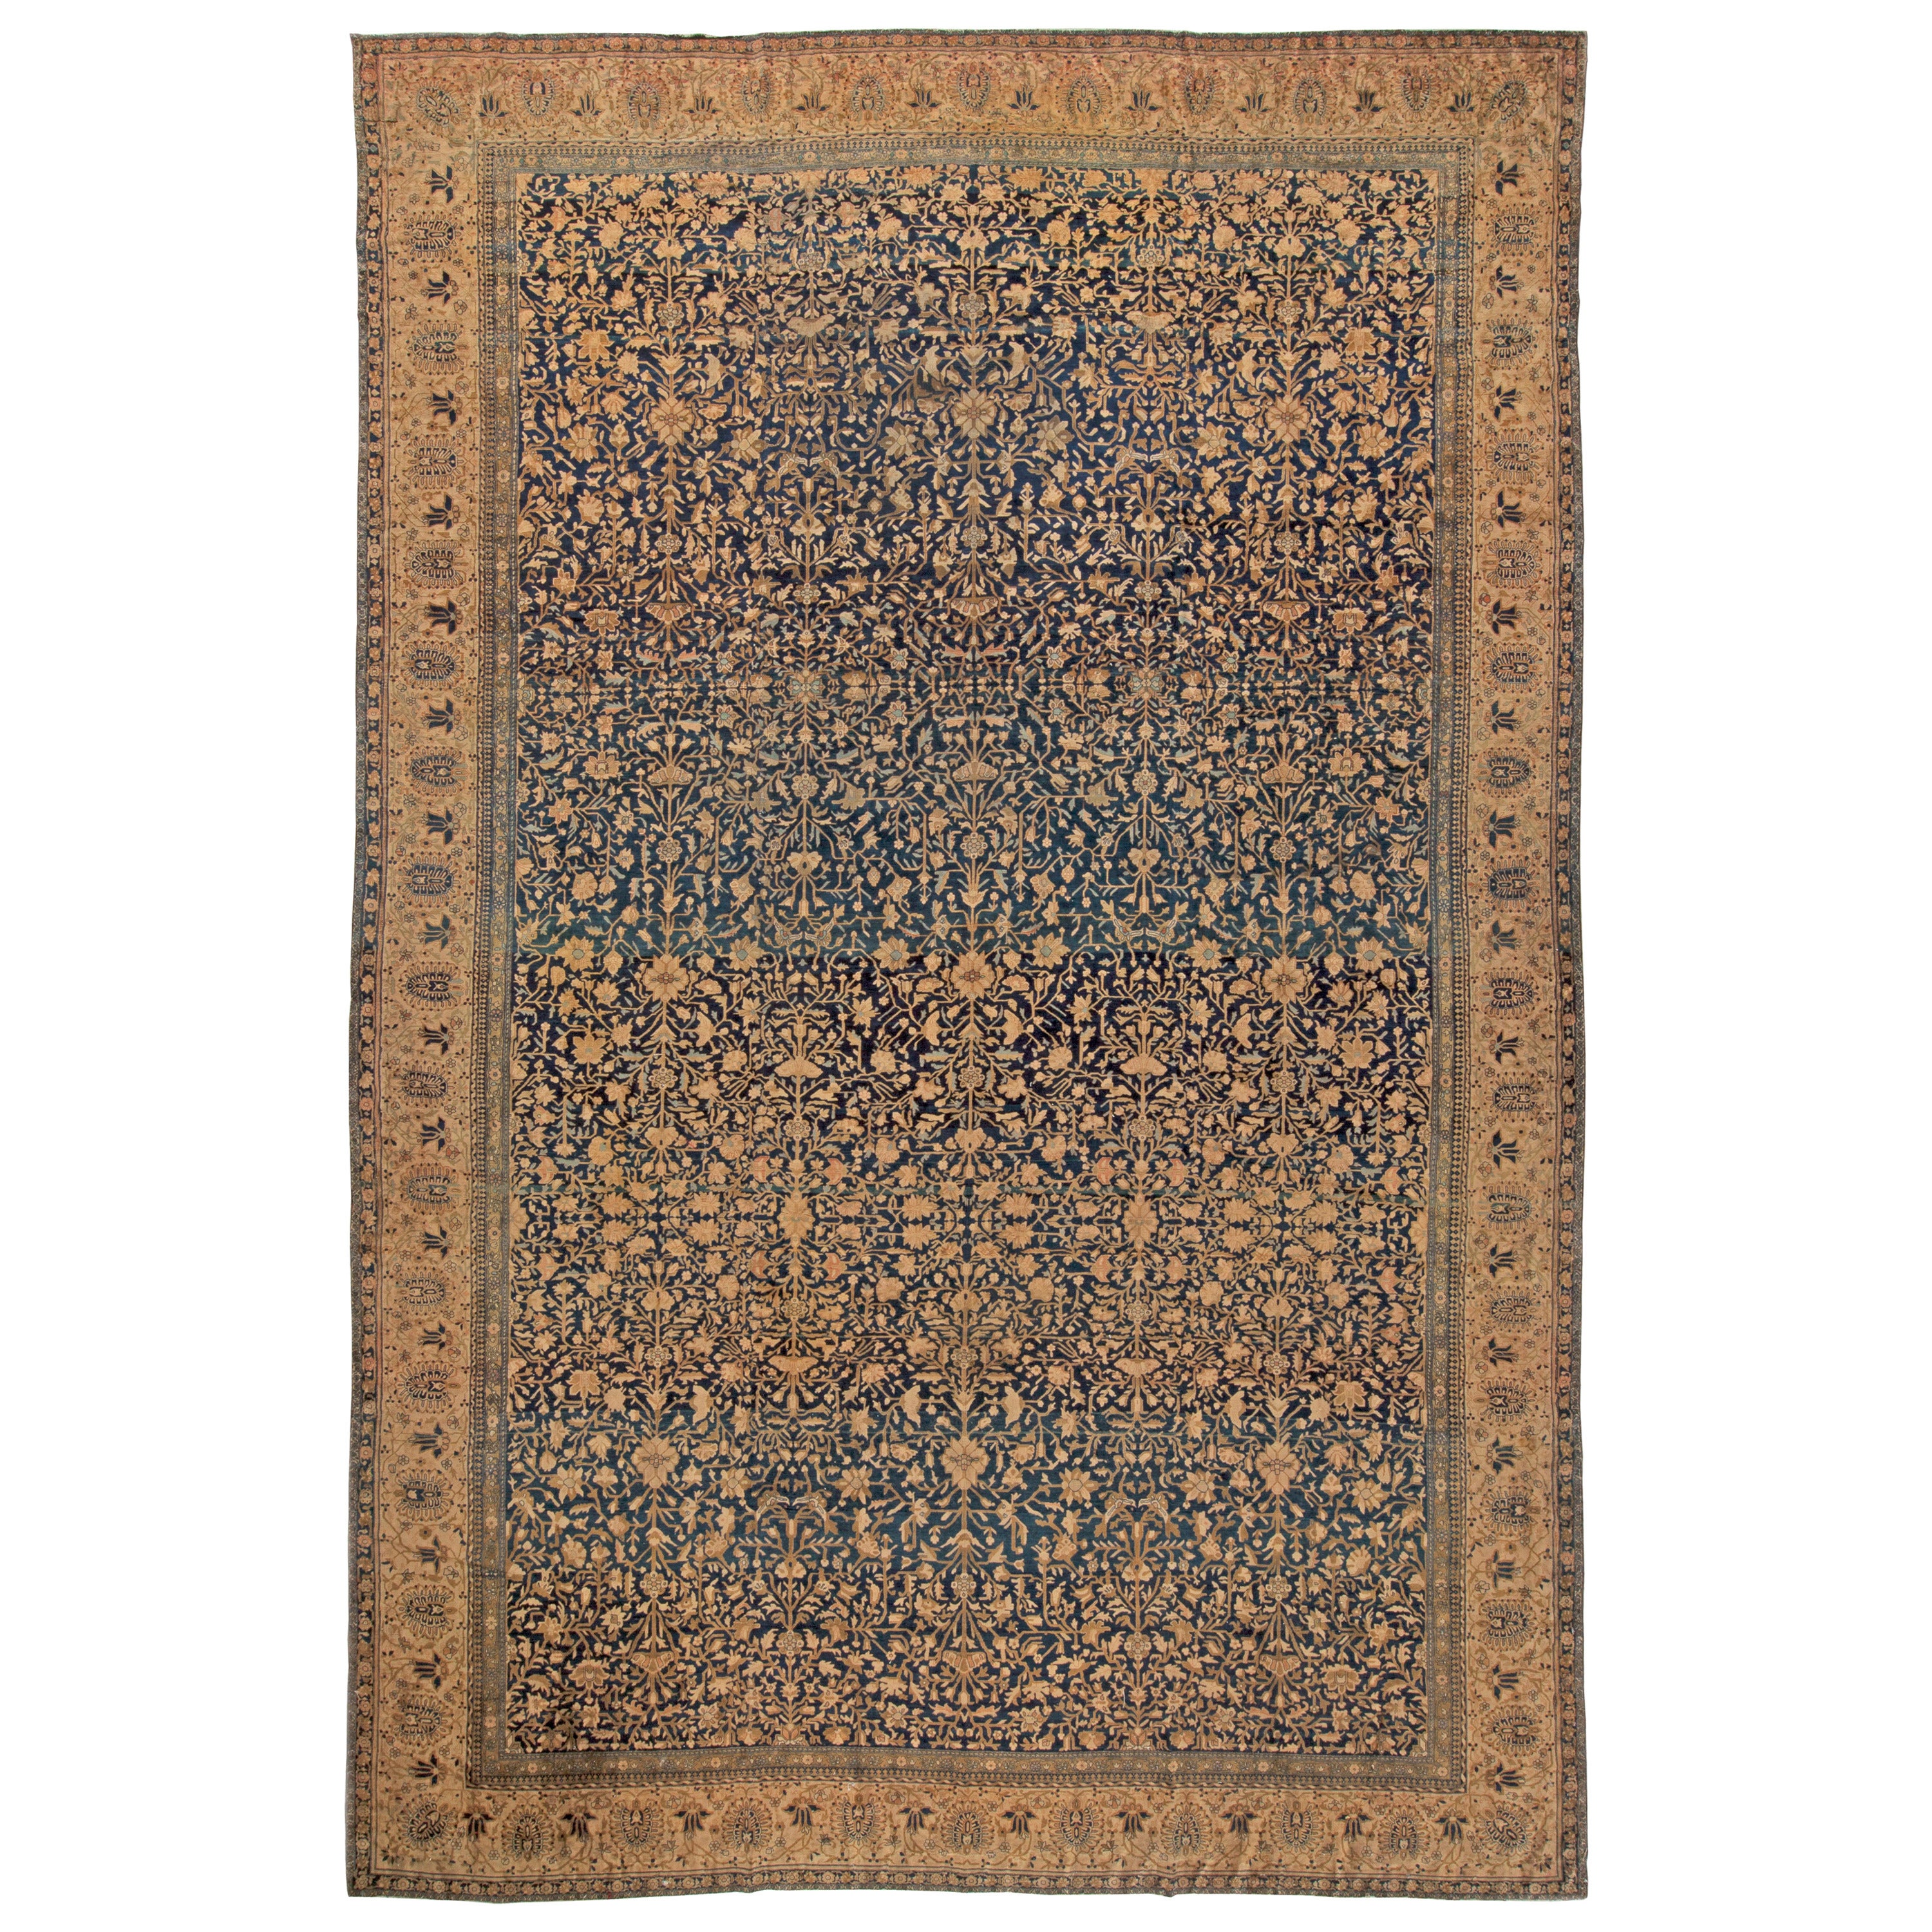 Vintage Persian Kashan Botanic Navy Brown Handmade Wool Rug by Doris Leslie Blau